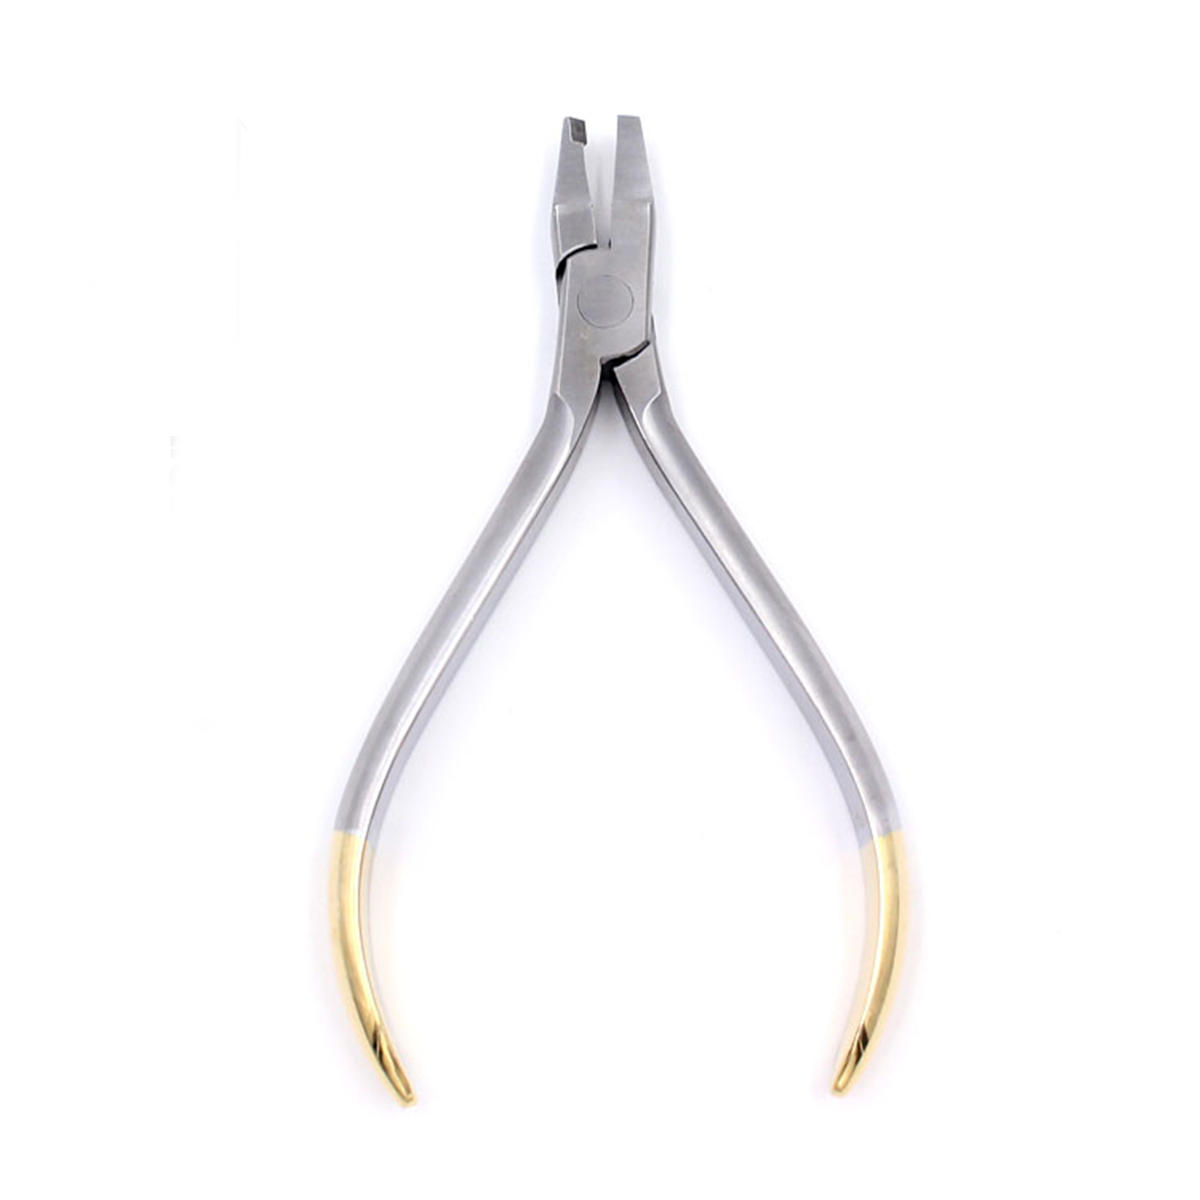 

Dental Orthodontic Forceps Pliers Tool Cutter End Distal Wires Bending Plier KIM Teeth